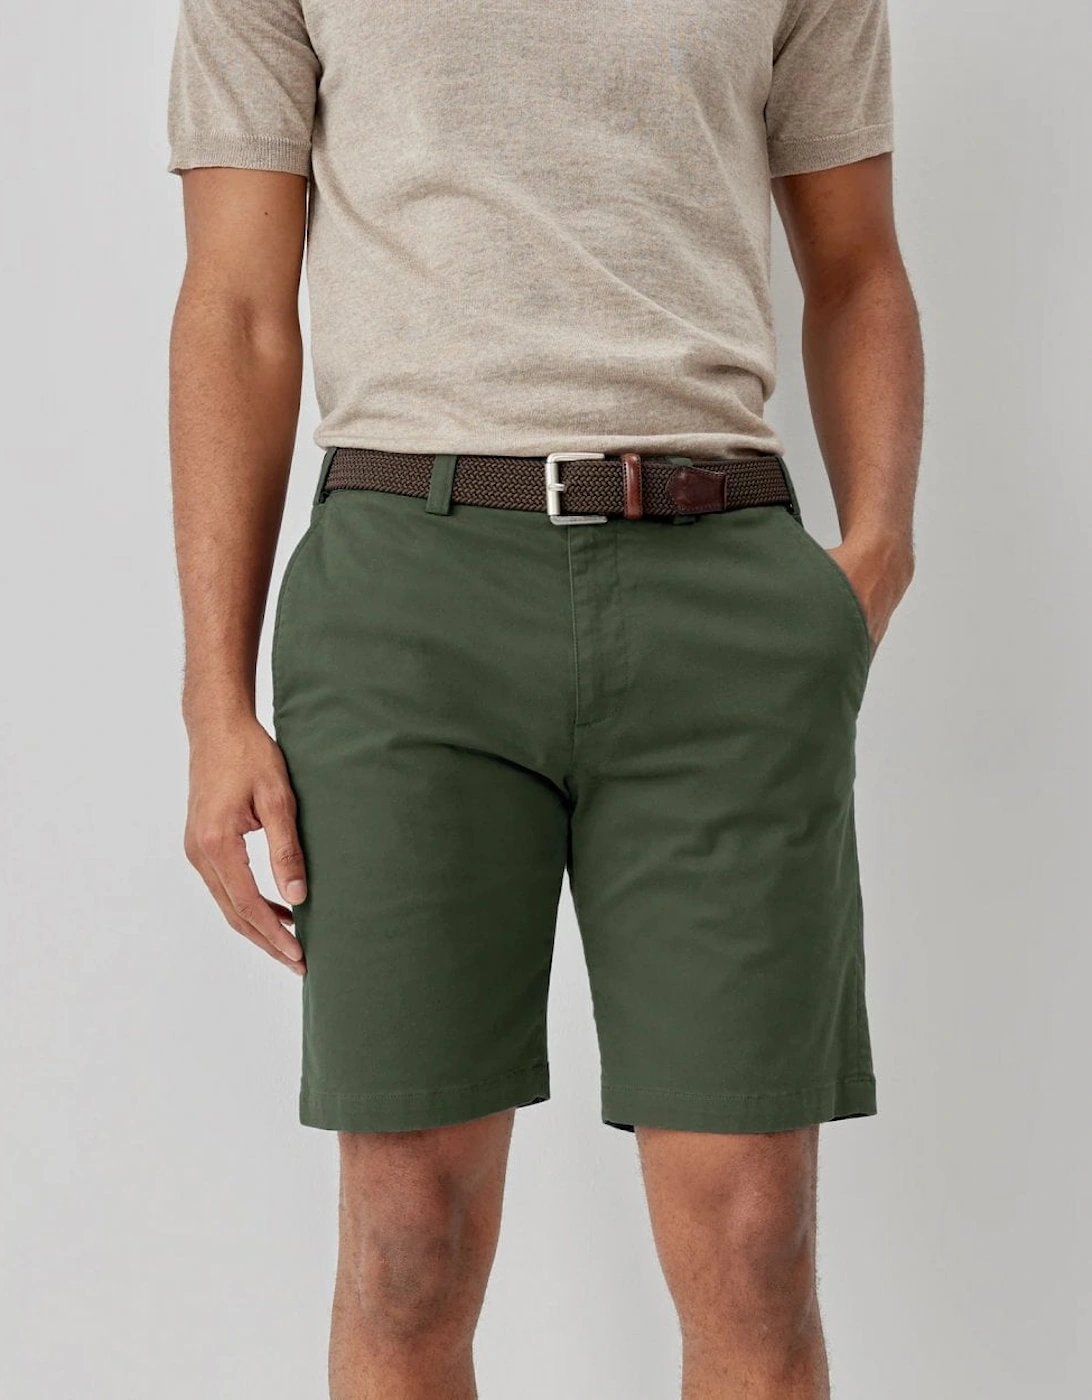 Frades Mens Italian Cotton Chino Shorts, 5 of 4